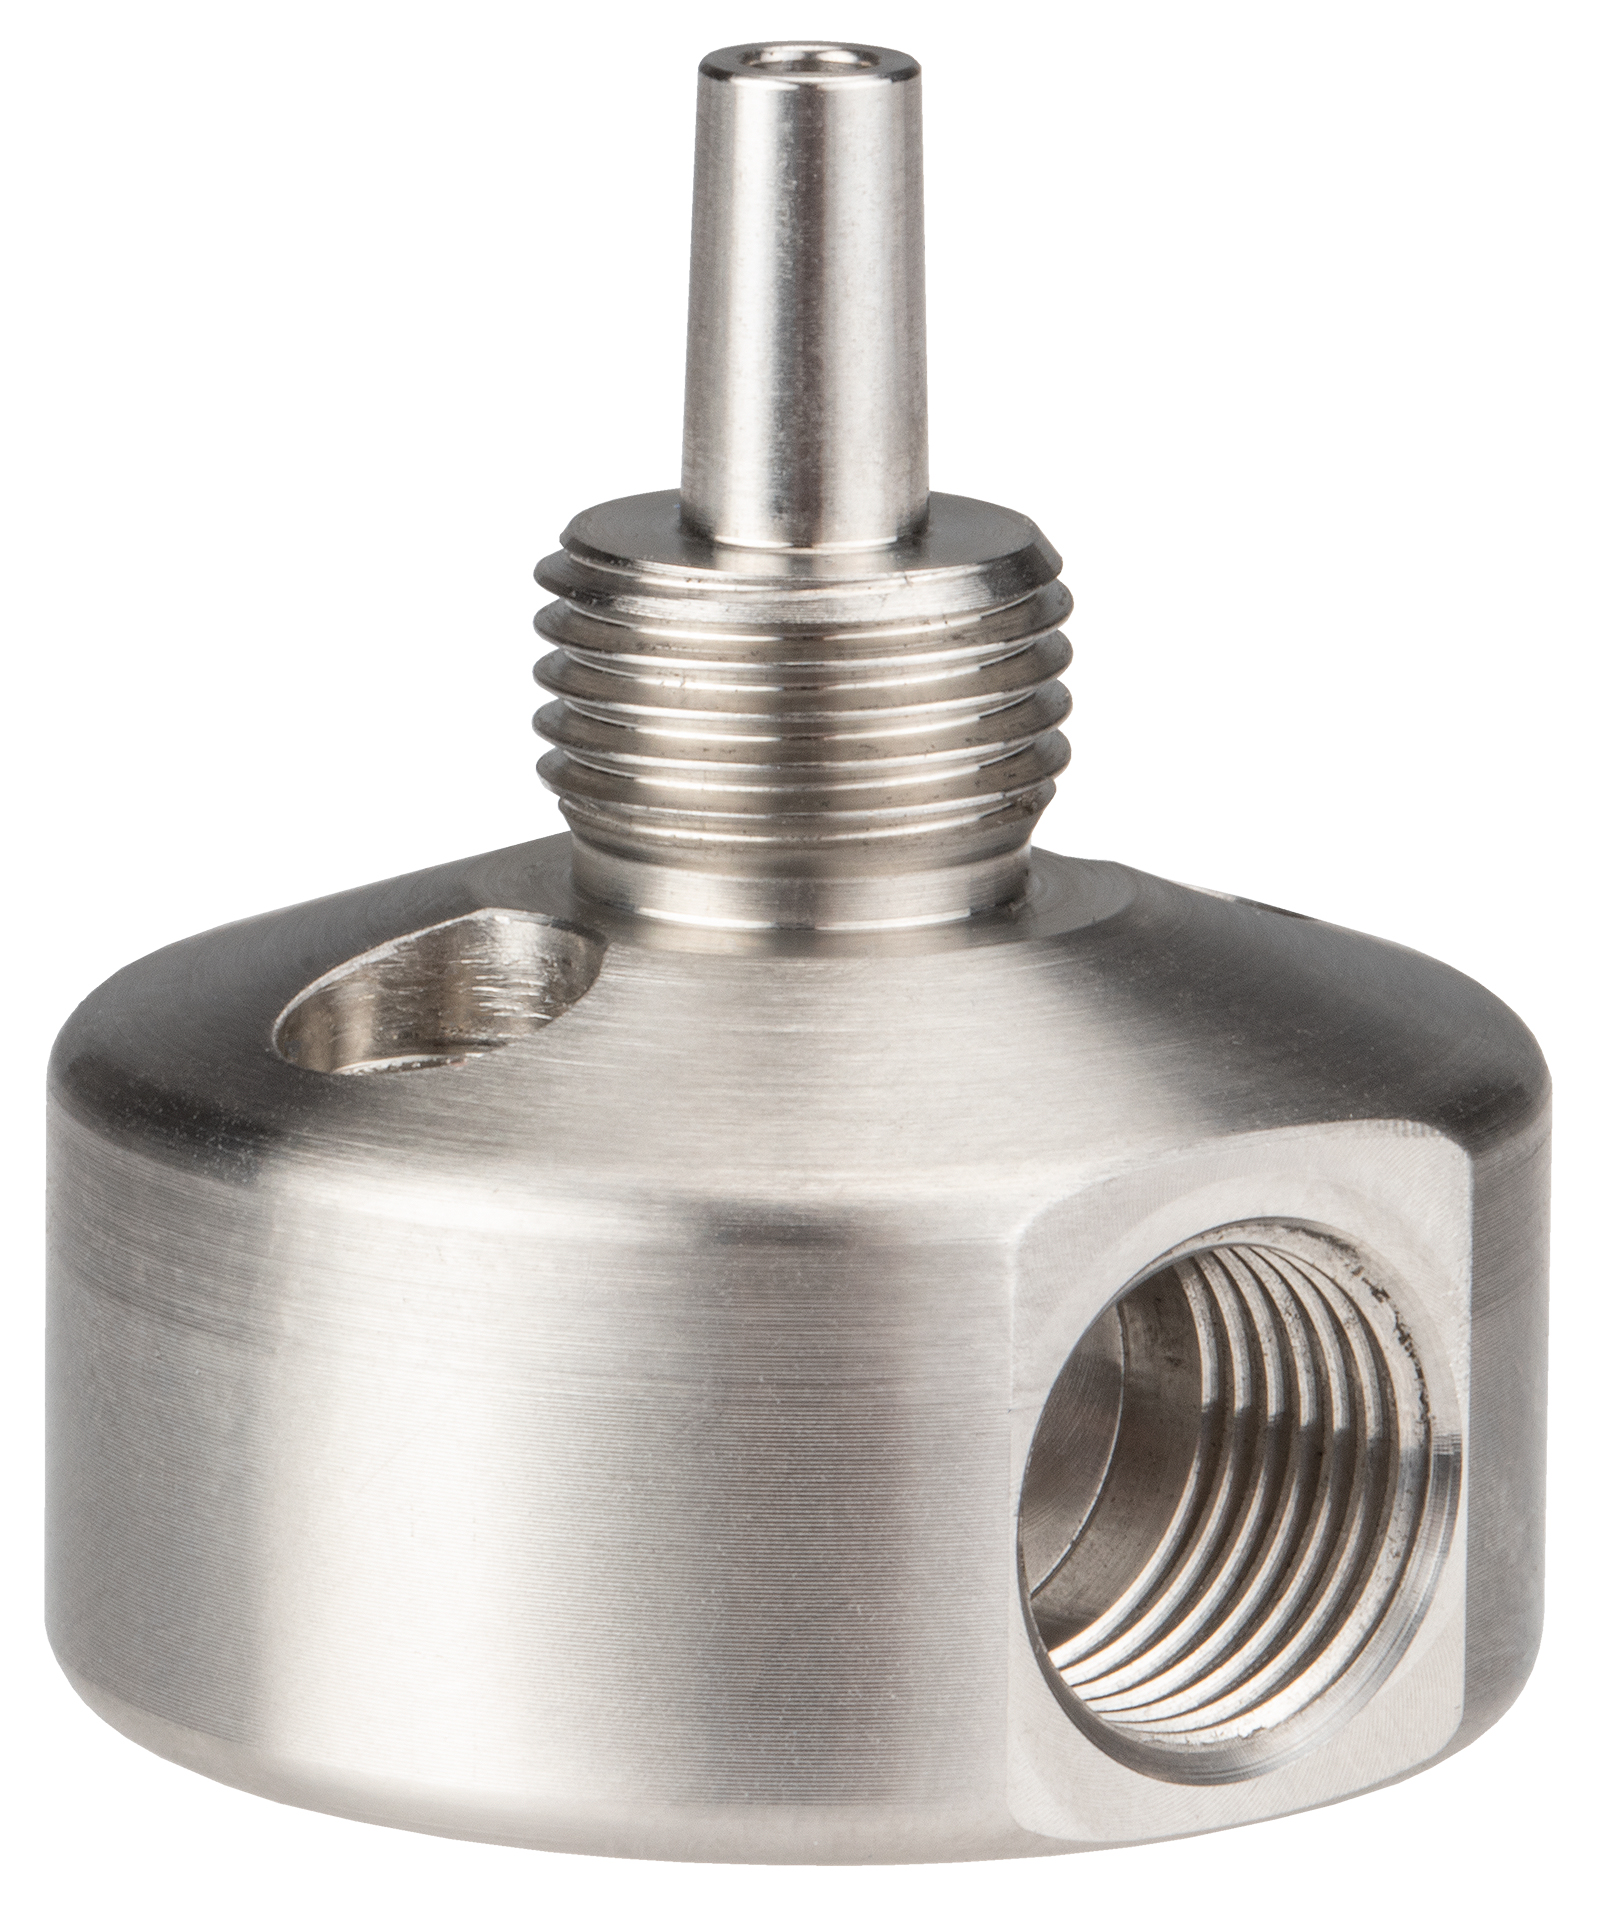 Bottom valve body for valve DV-5625-MED